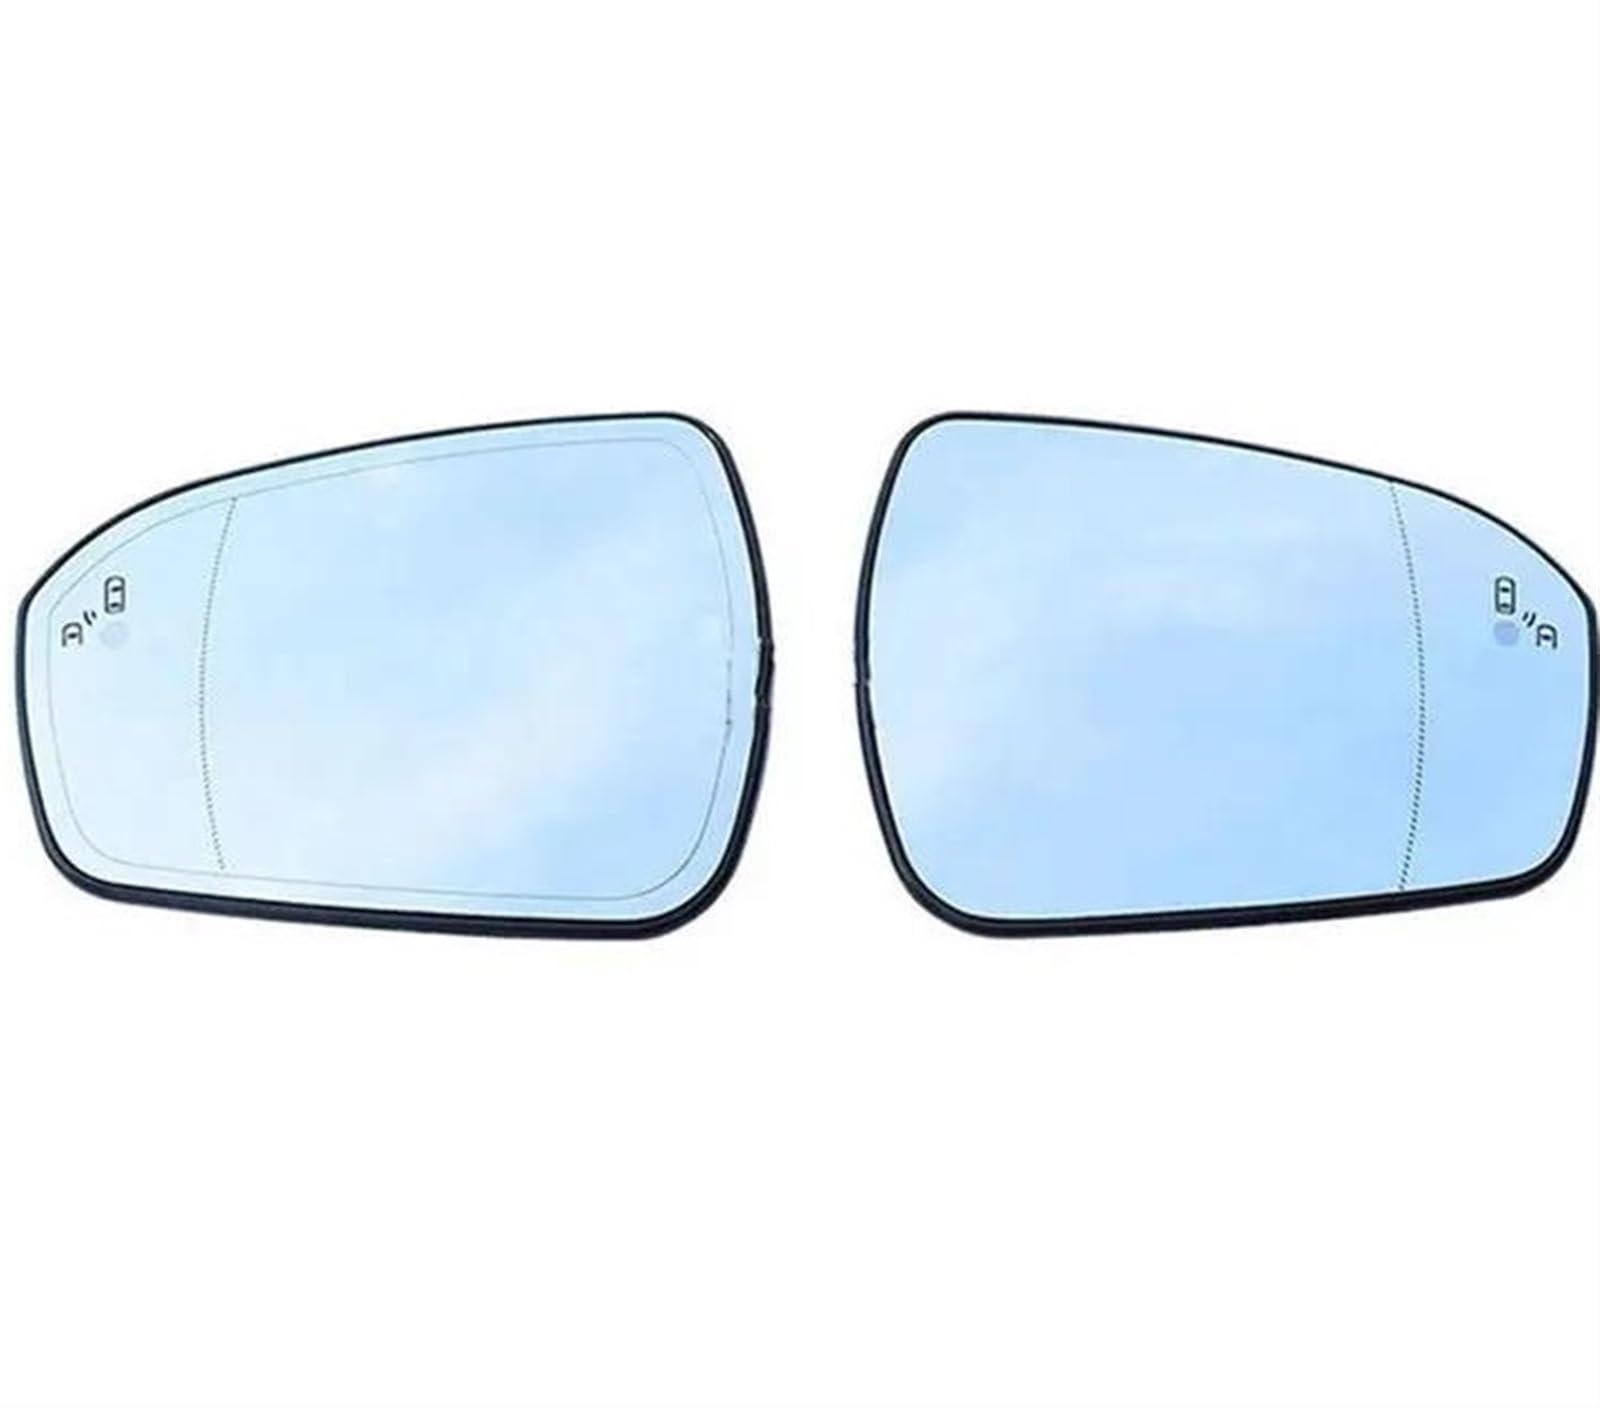 Außenspiegel Für Ford Für Mondeo V Für MK5 2014 2015 2016 2017 2018 Auto Erhitzt Blind Spot Warnung Flügel Hinten Spiegel Glas Rück Spiegelglas (Farbe : A pair) von PINNKL